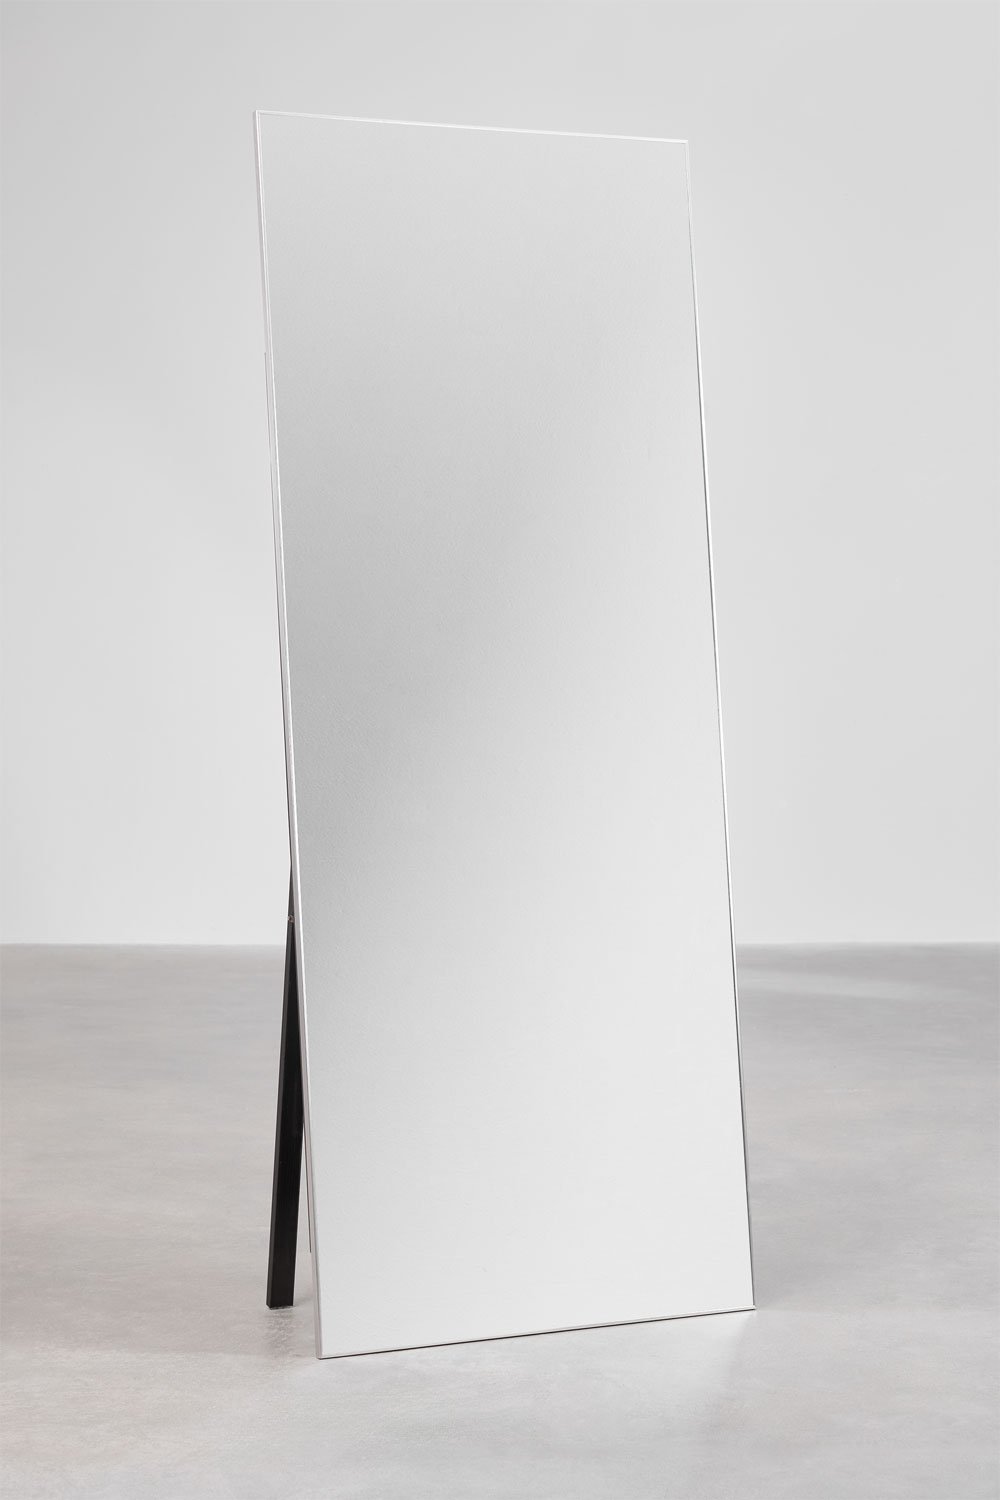 Prostokątne aluminiowe lustro stojące (80x200 cm) Ondra, obrazek w galerii 1